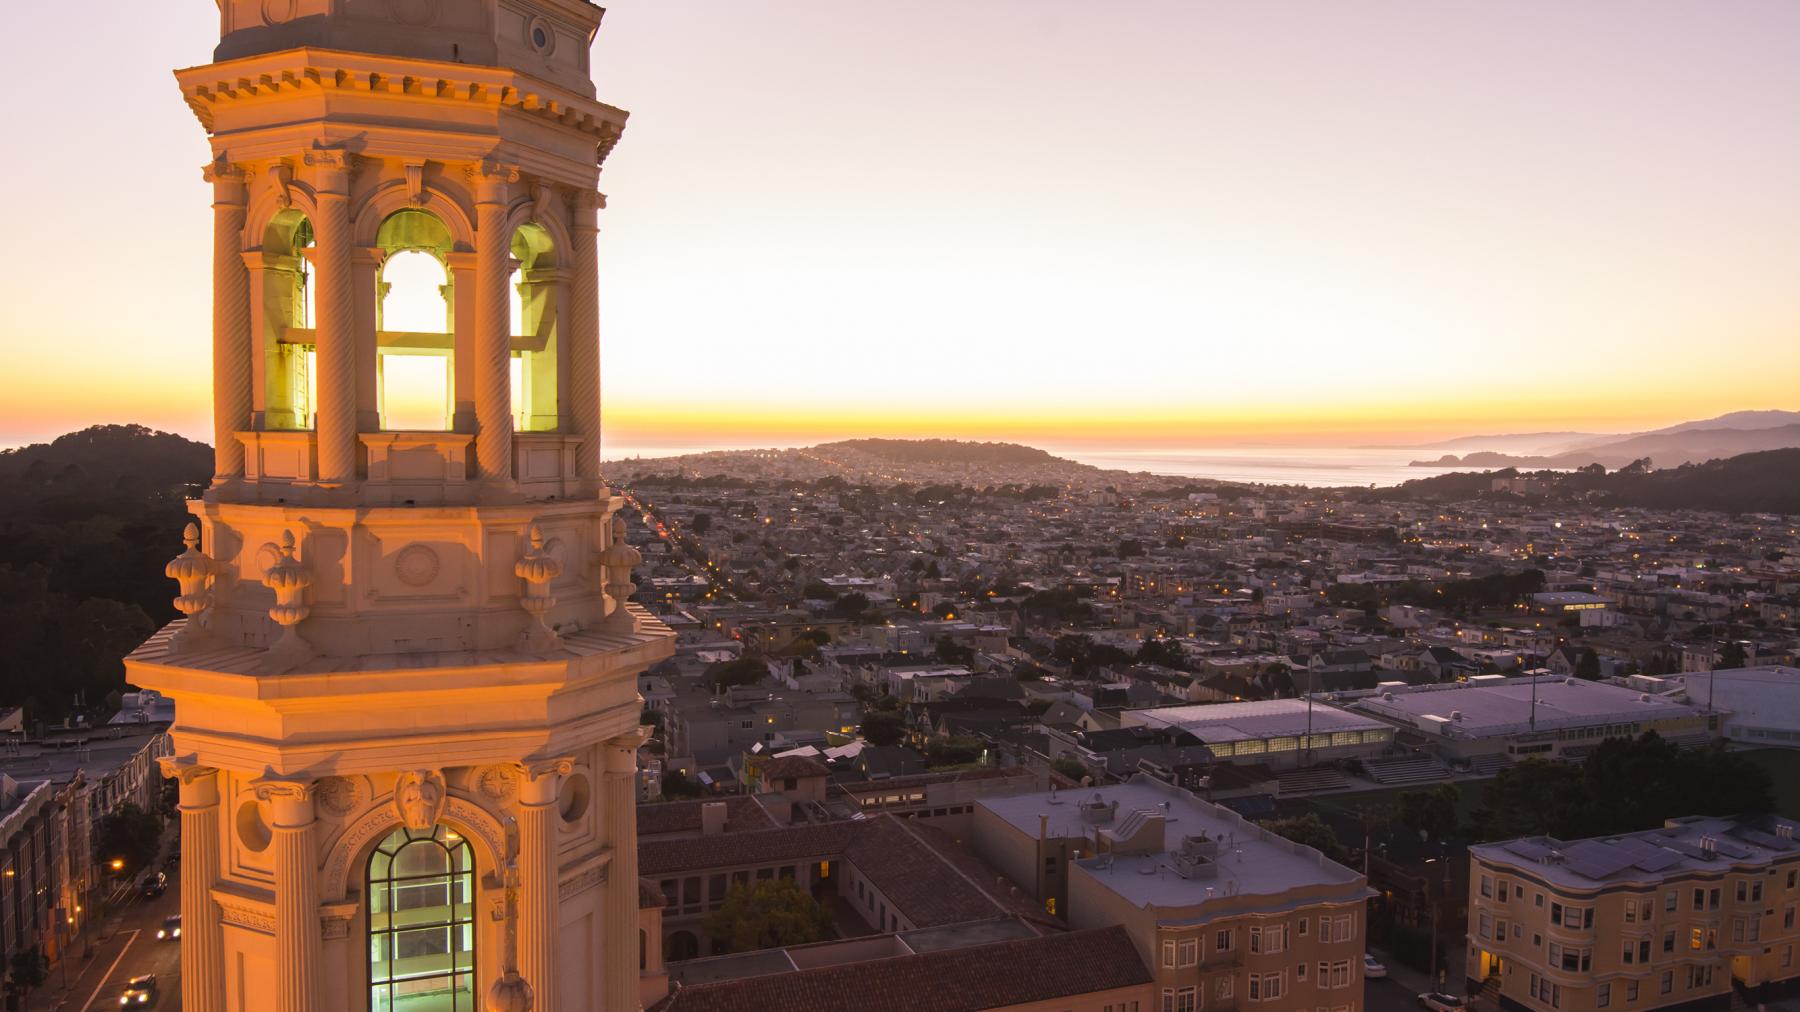 San Francisco Landscape during sunset